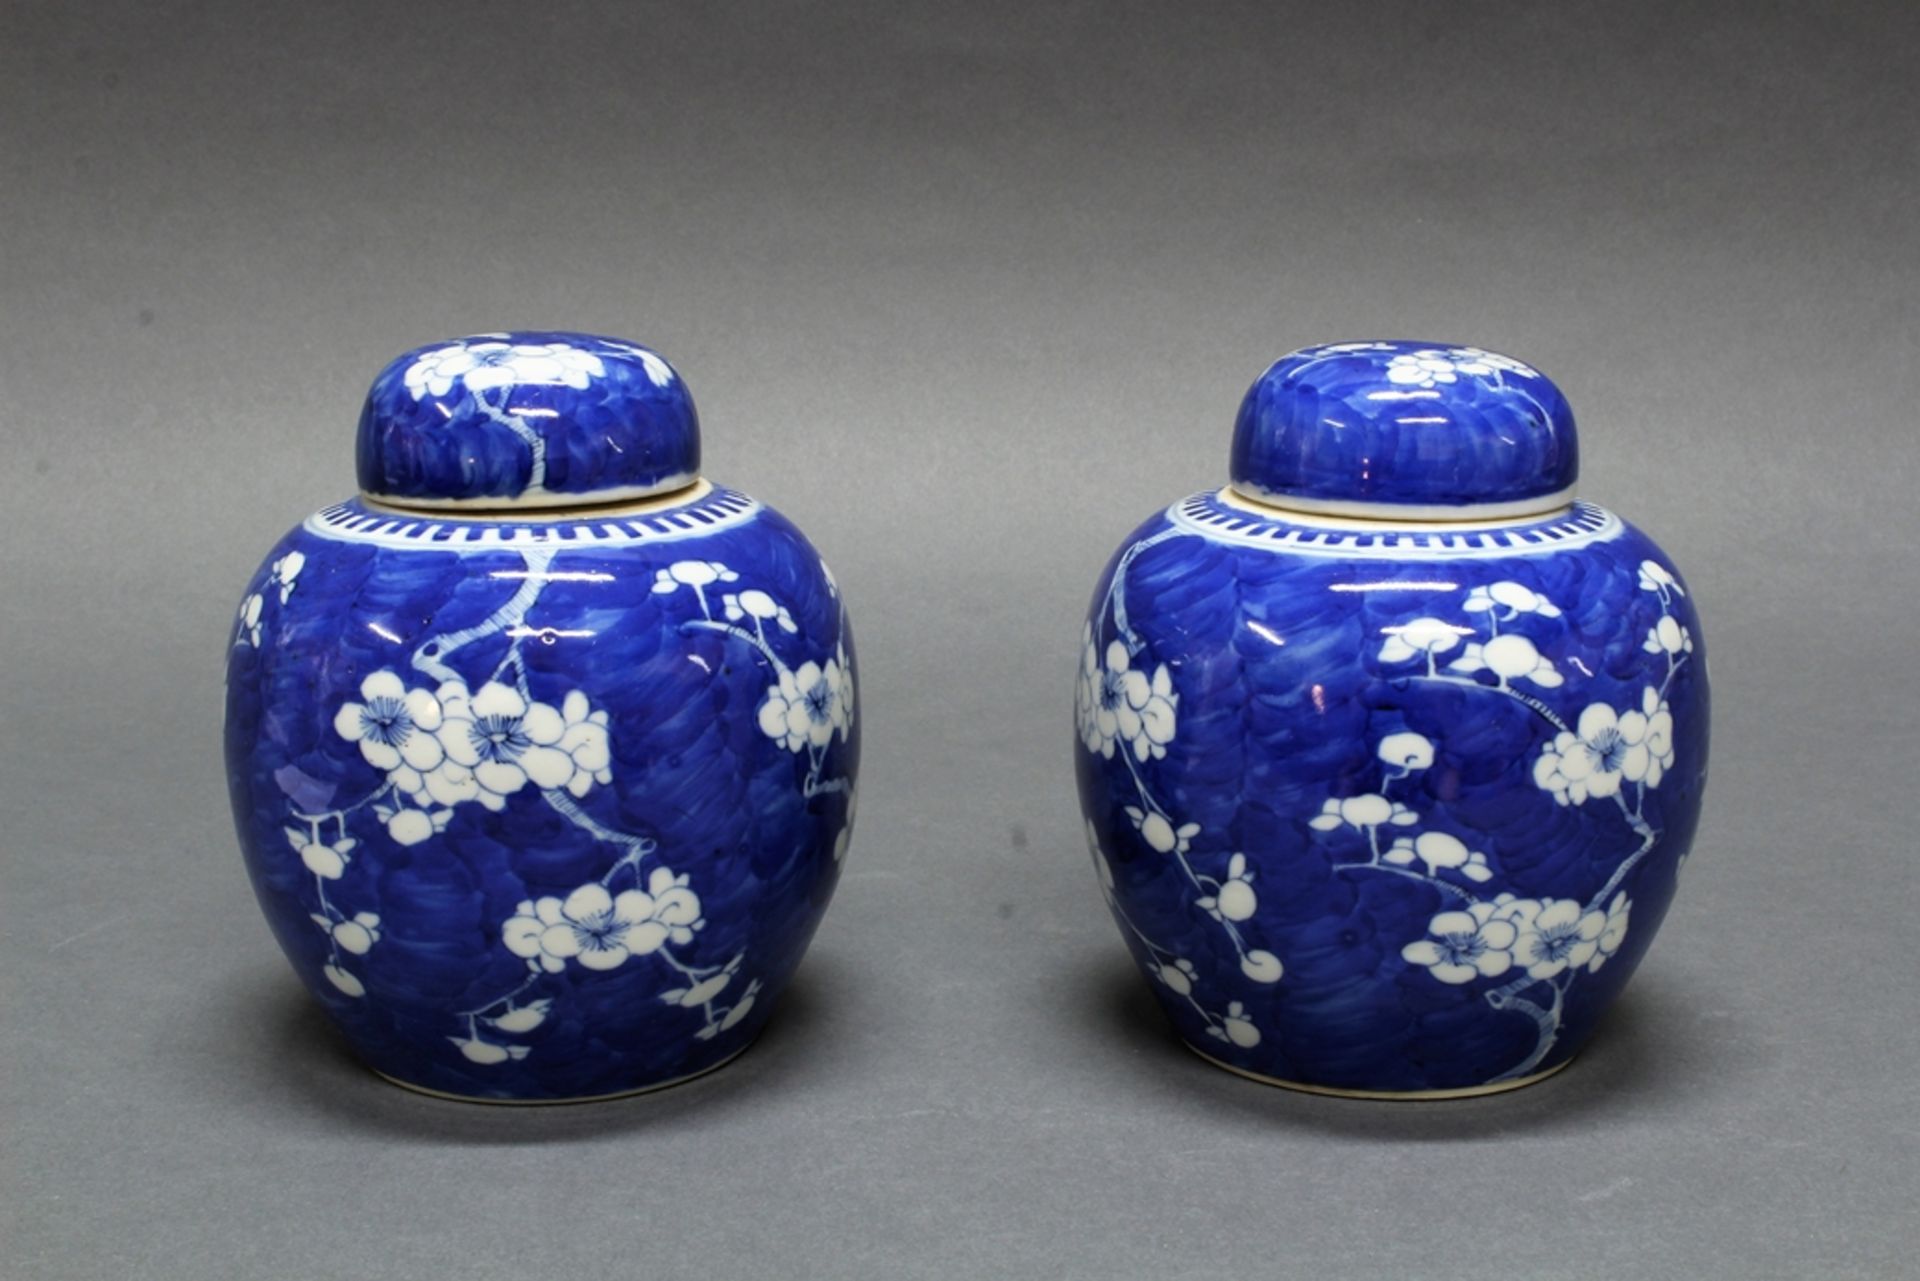 Paar Ingwertöpfe, China, Ende 19. Jh., Porzellan, bauchig, blau-weißer Ice-Crackdekor, Vierzeichenm